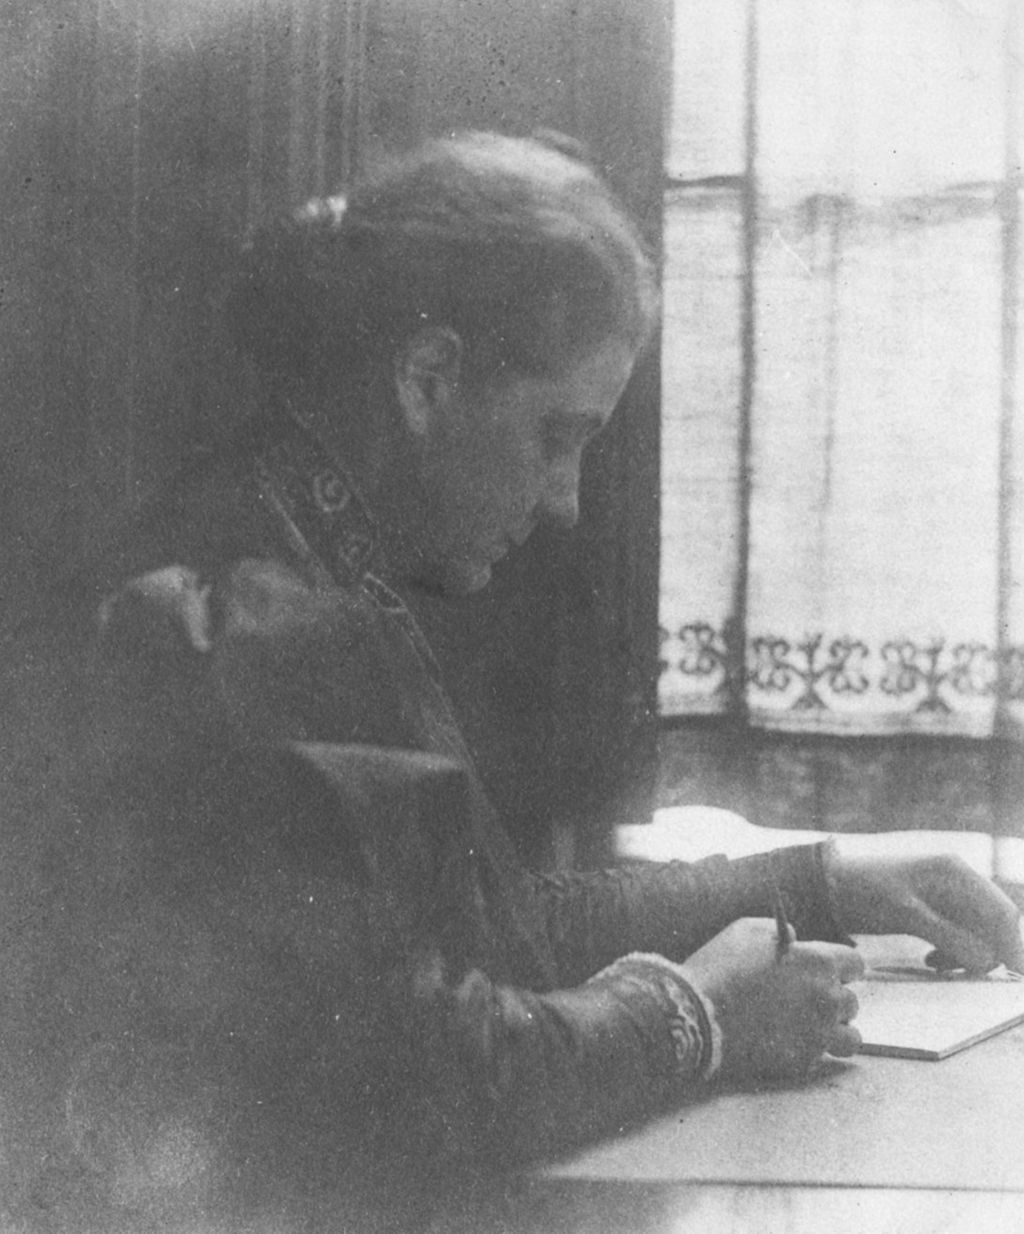 Miniature of Jane Addams writing